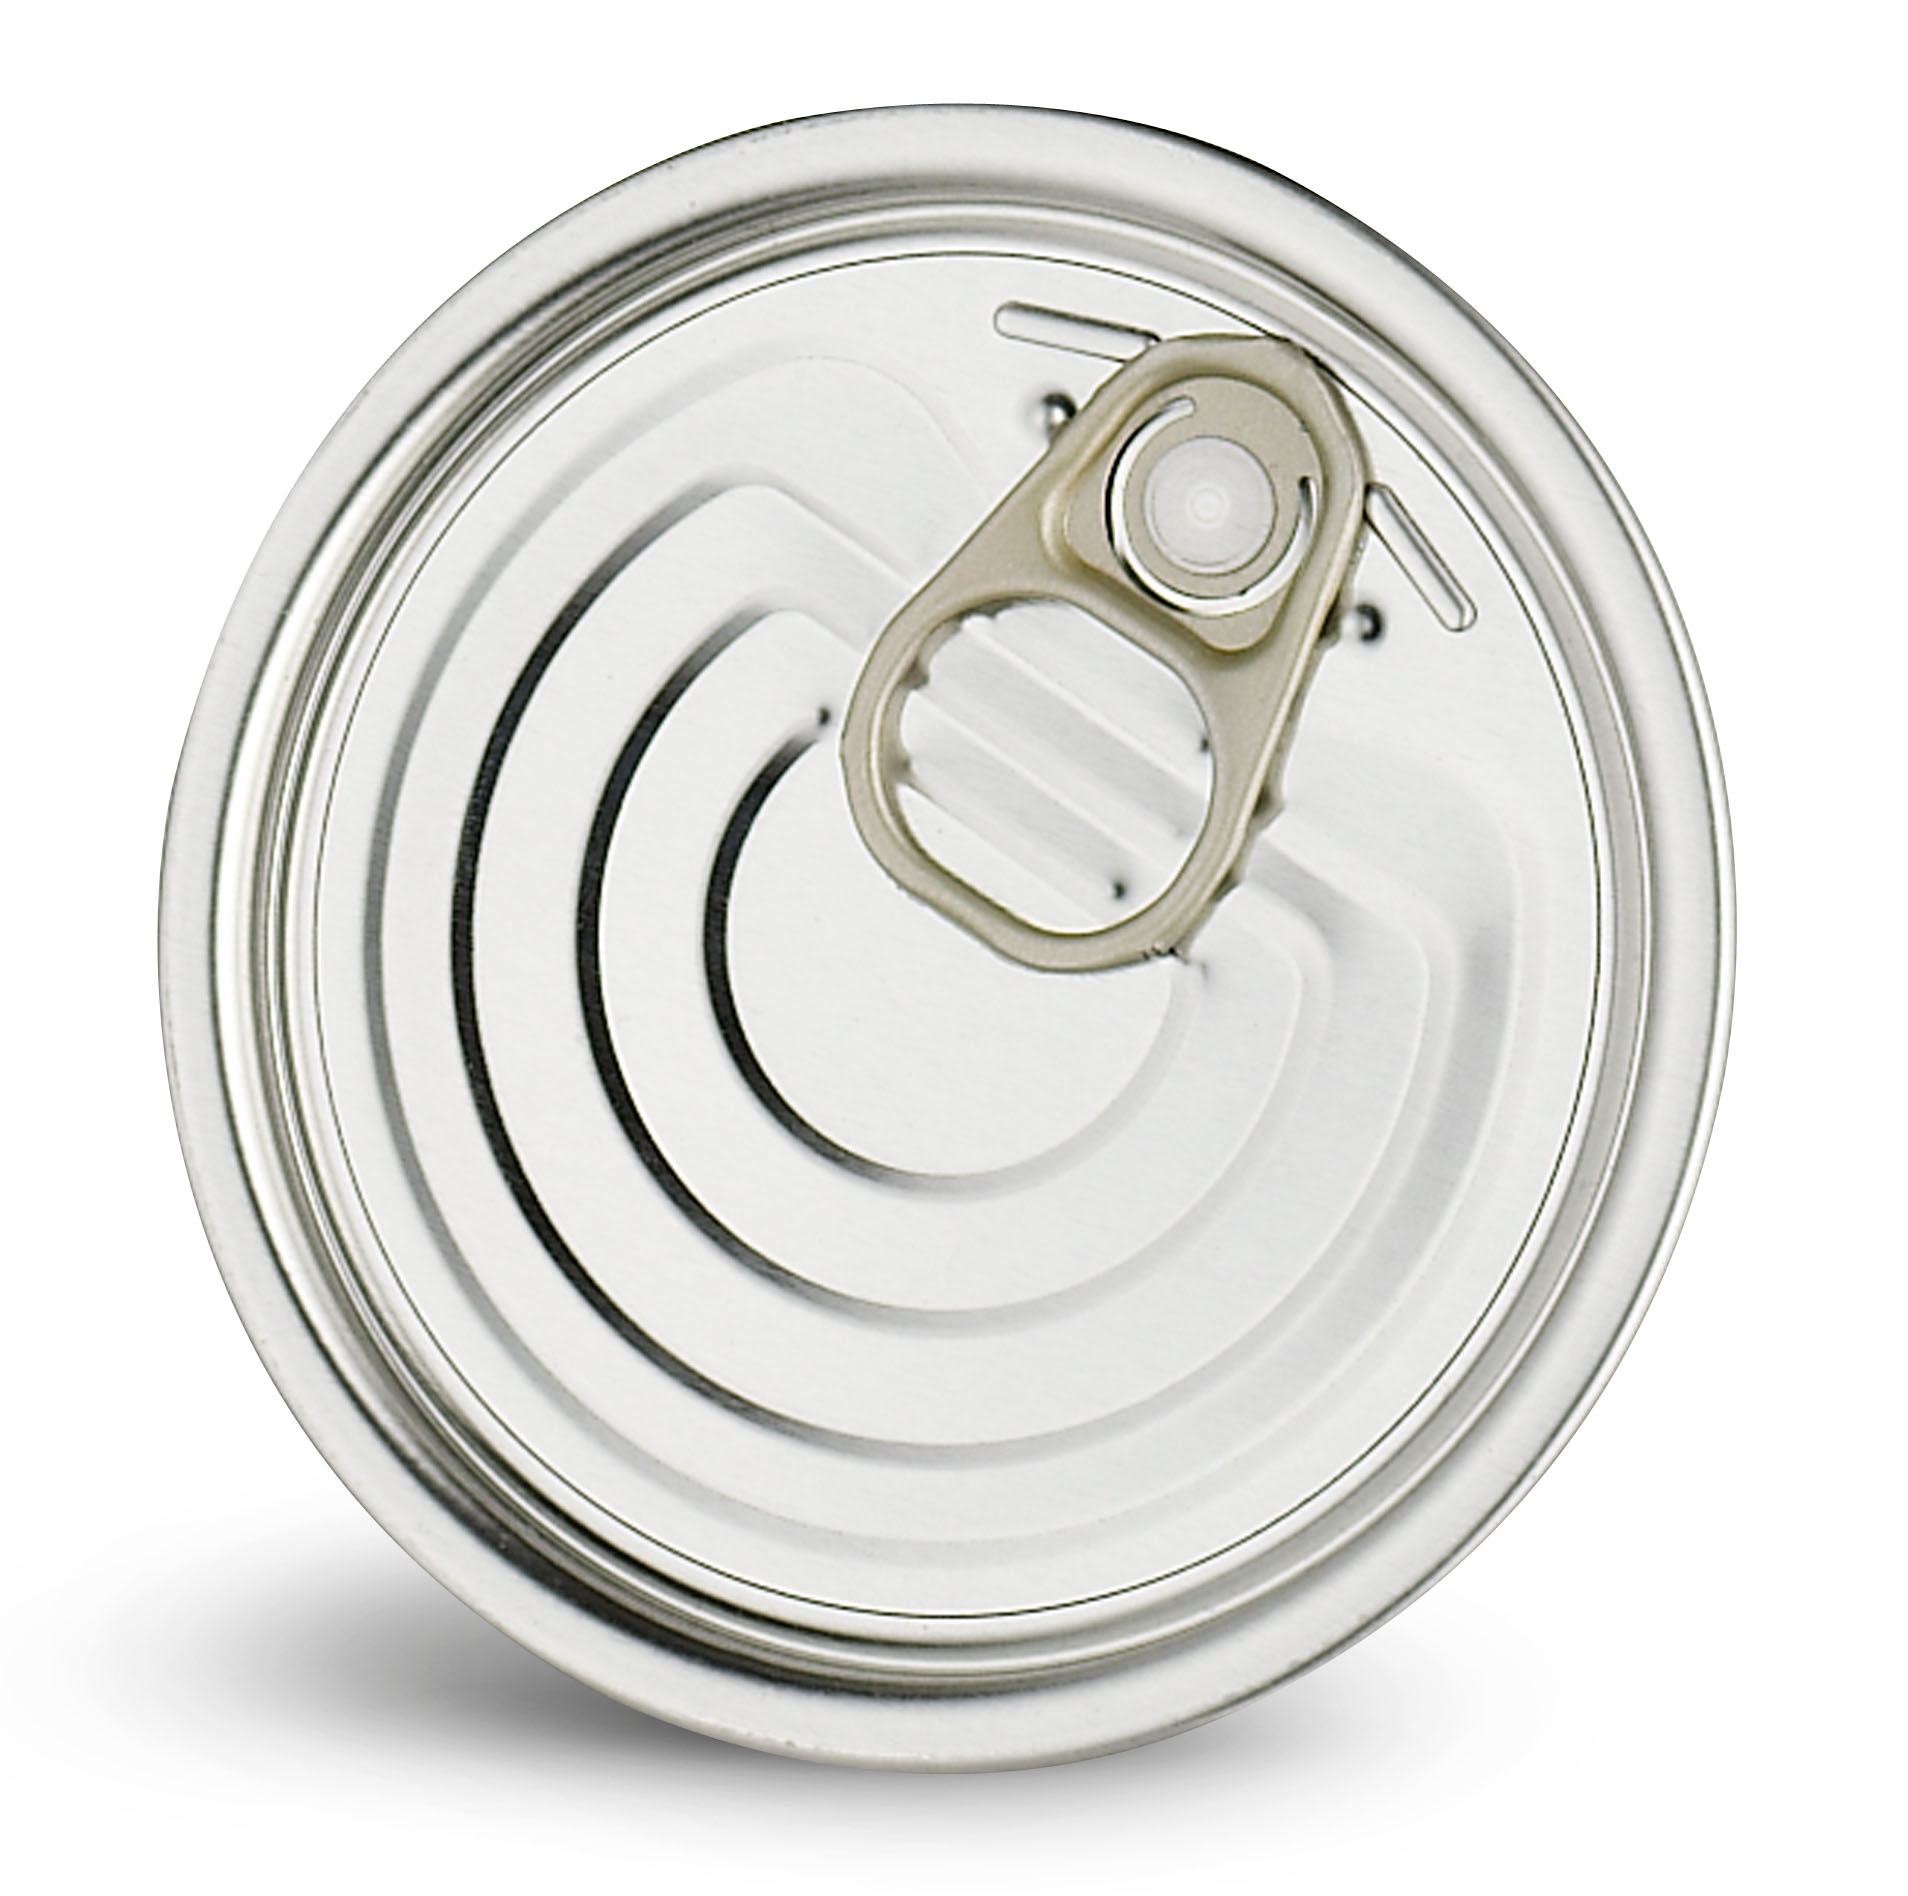 tin can manufacturer